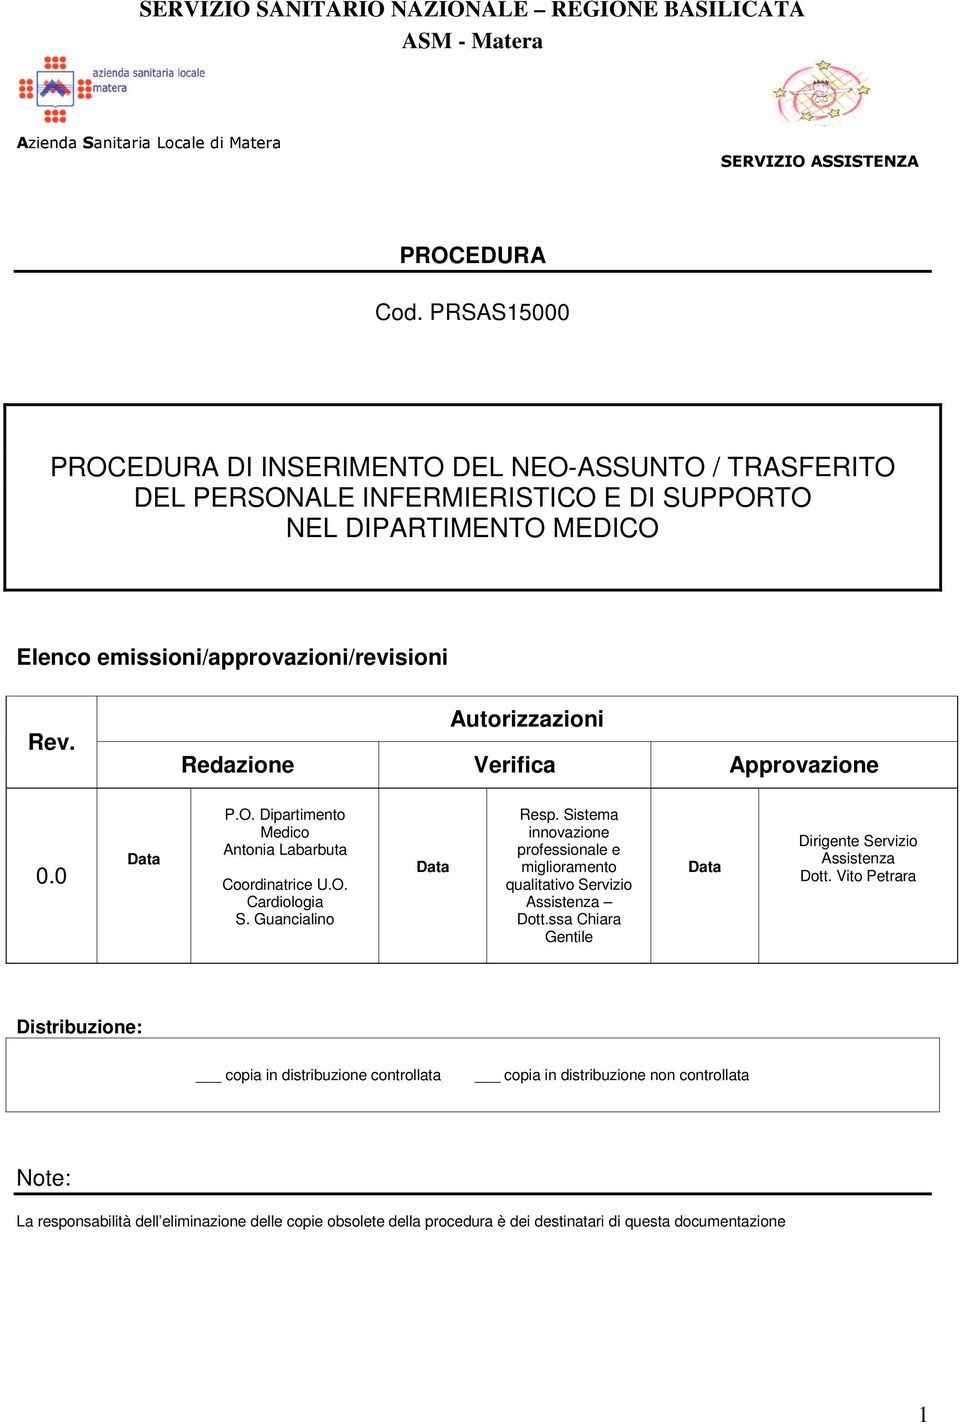 Autorizzazioni Redazione Verifica Approvazione 0.0 Data P.O. Dipartimento Medico Antonia Labarbuta Coordinatrice U.O. Cardiologia S. Guancialino Data Resp.